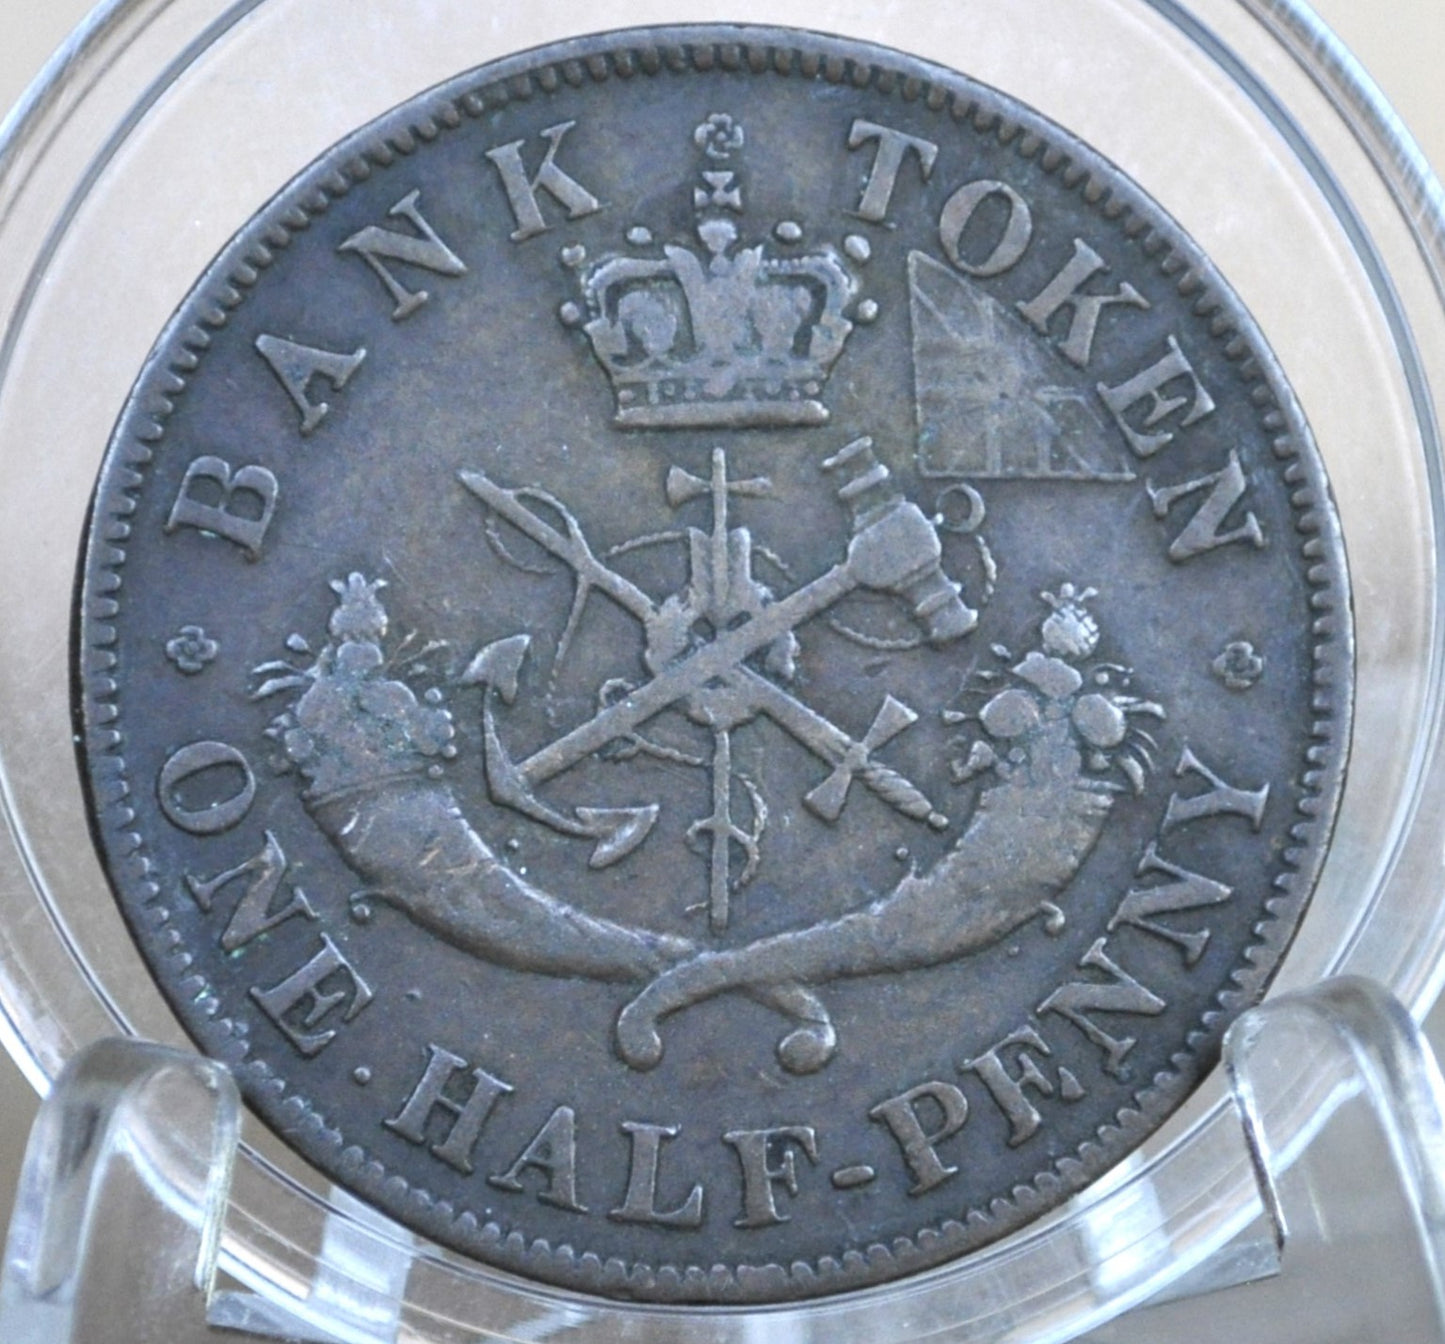 1850 Bank of Upper Canada Half Penny - 1/2 Penny Bank Token - Great Condition